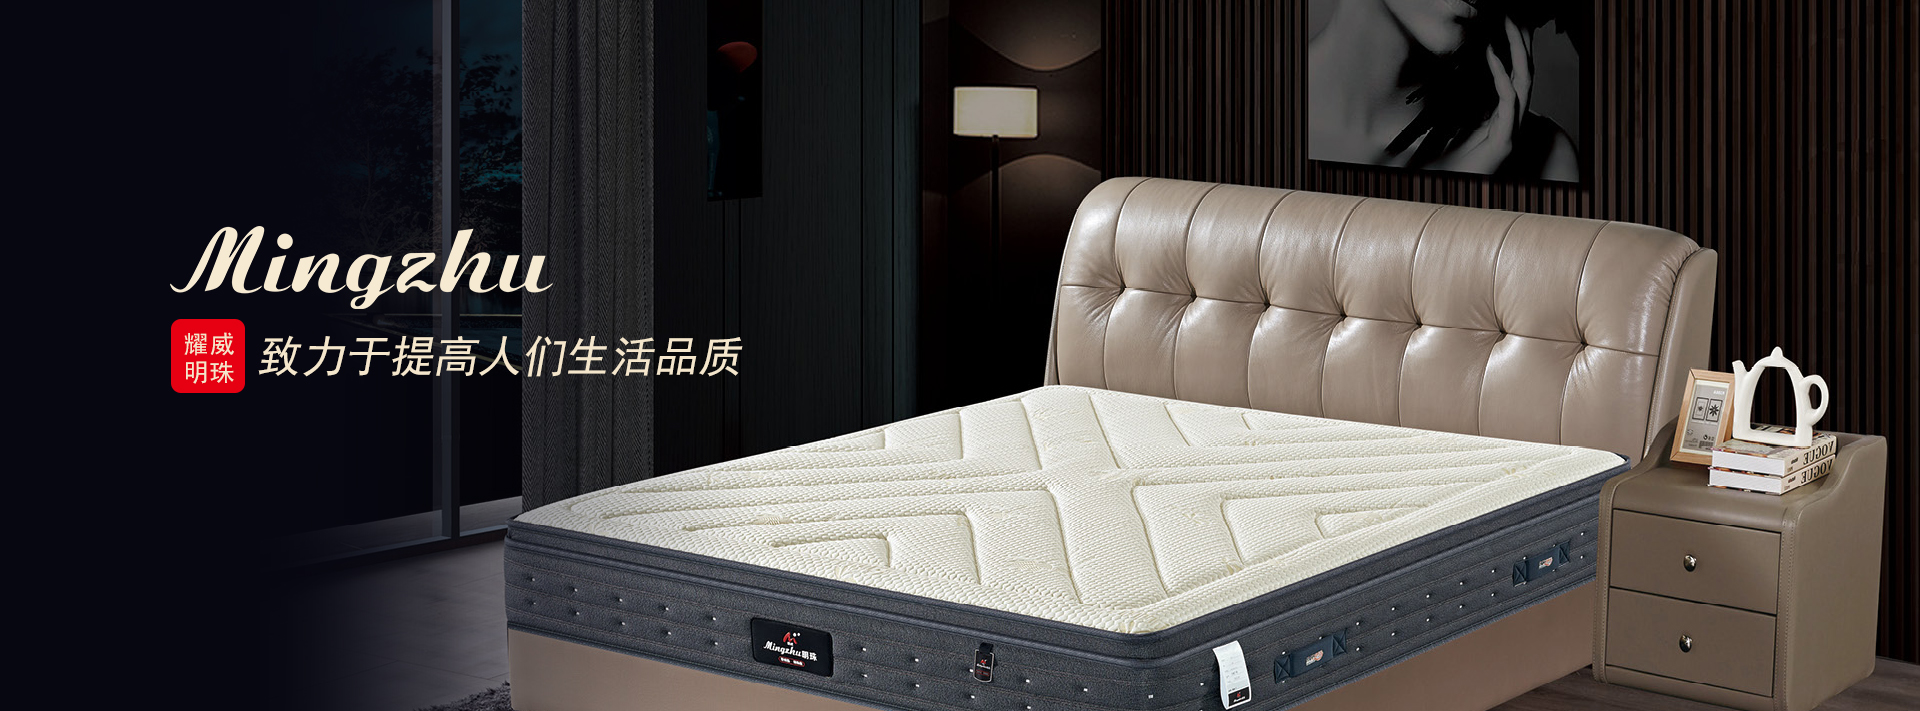 重庆kok手机网页版登录
床垫有限公司